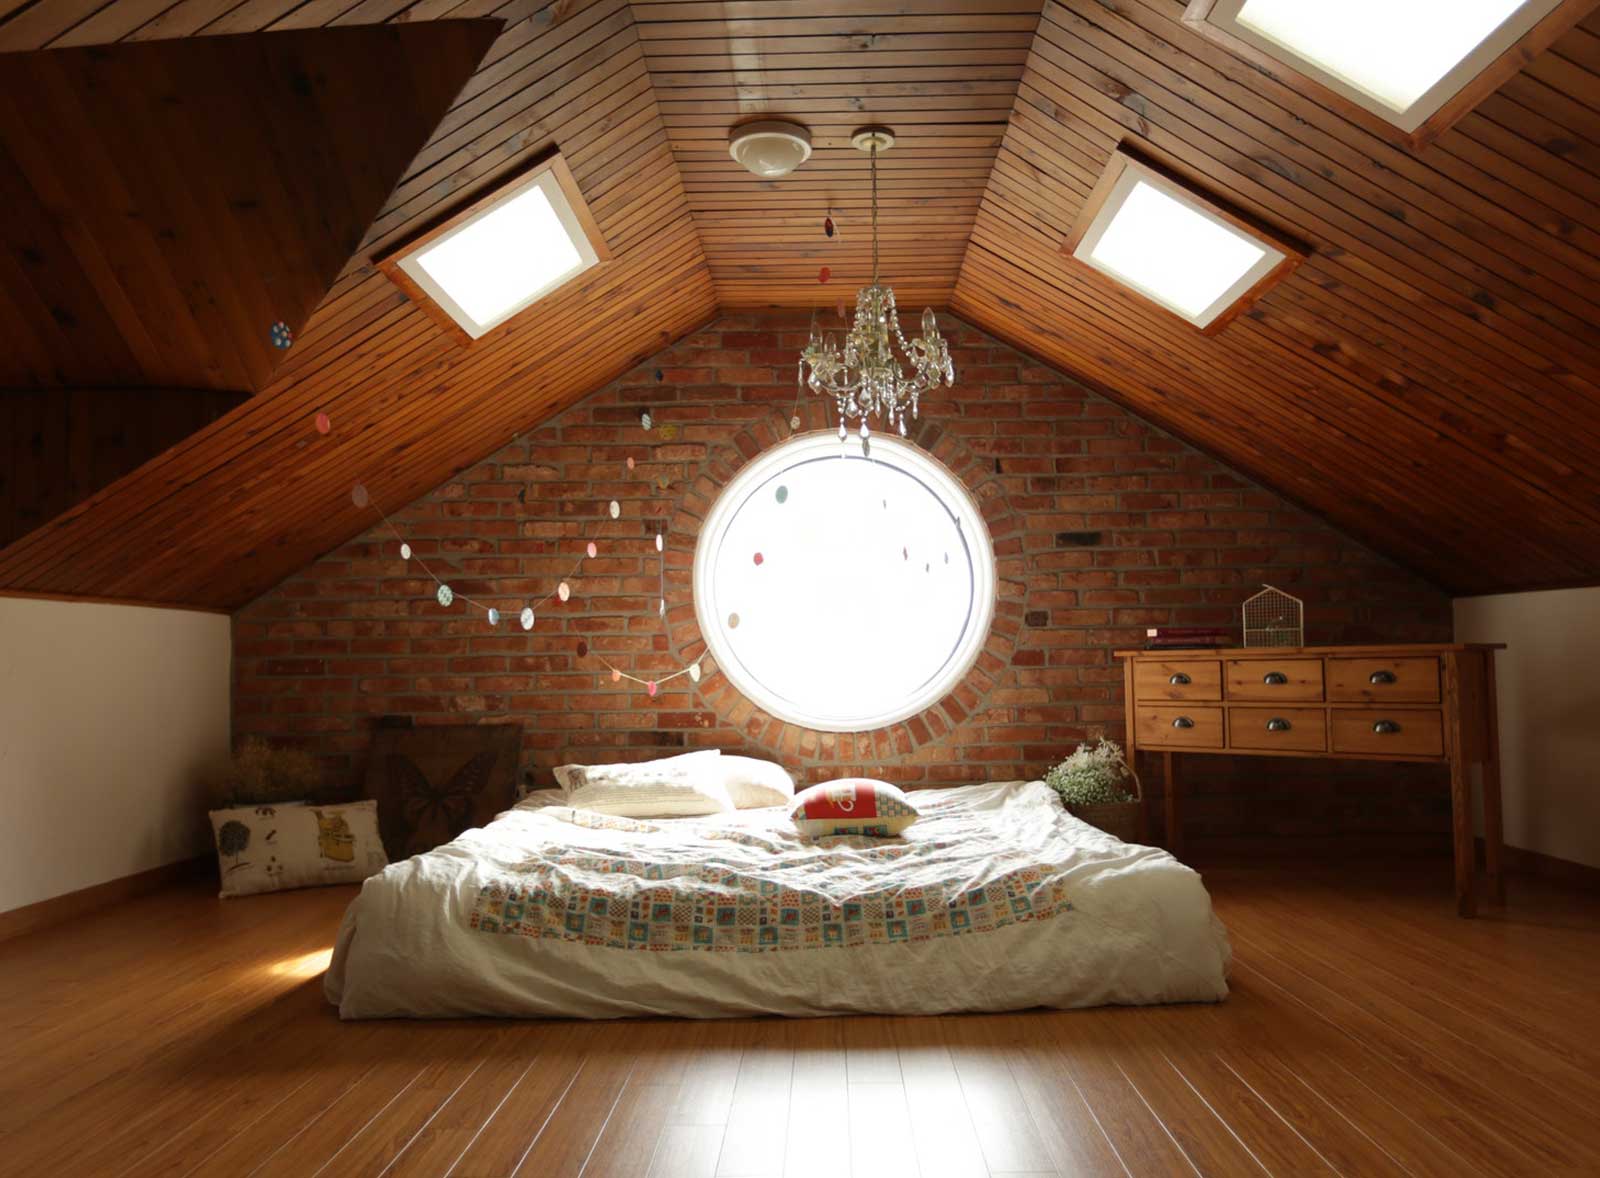 ITBF rénovation - Bedroom loft